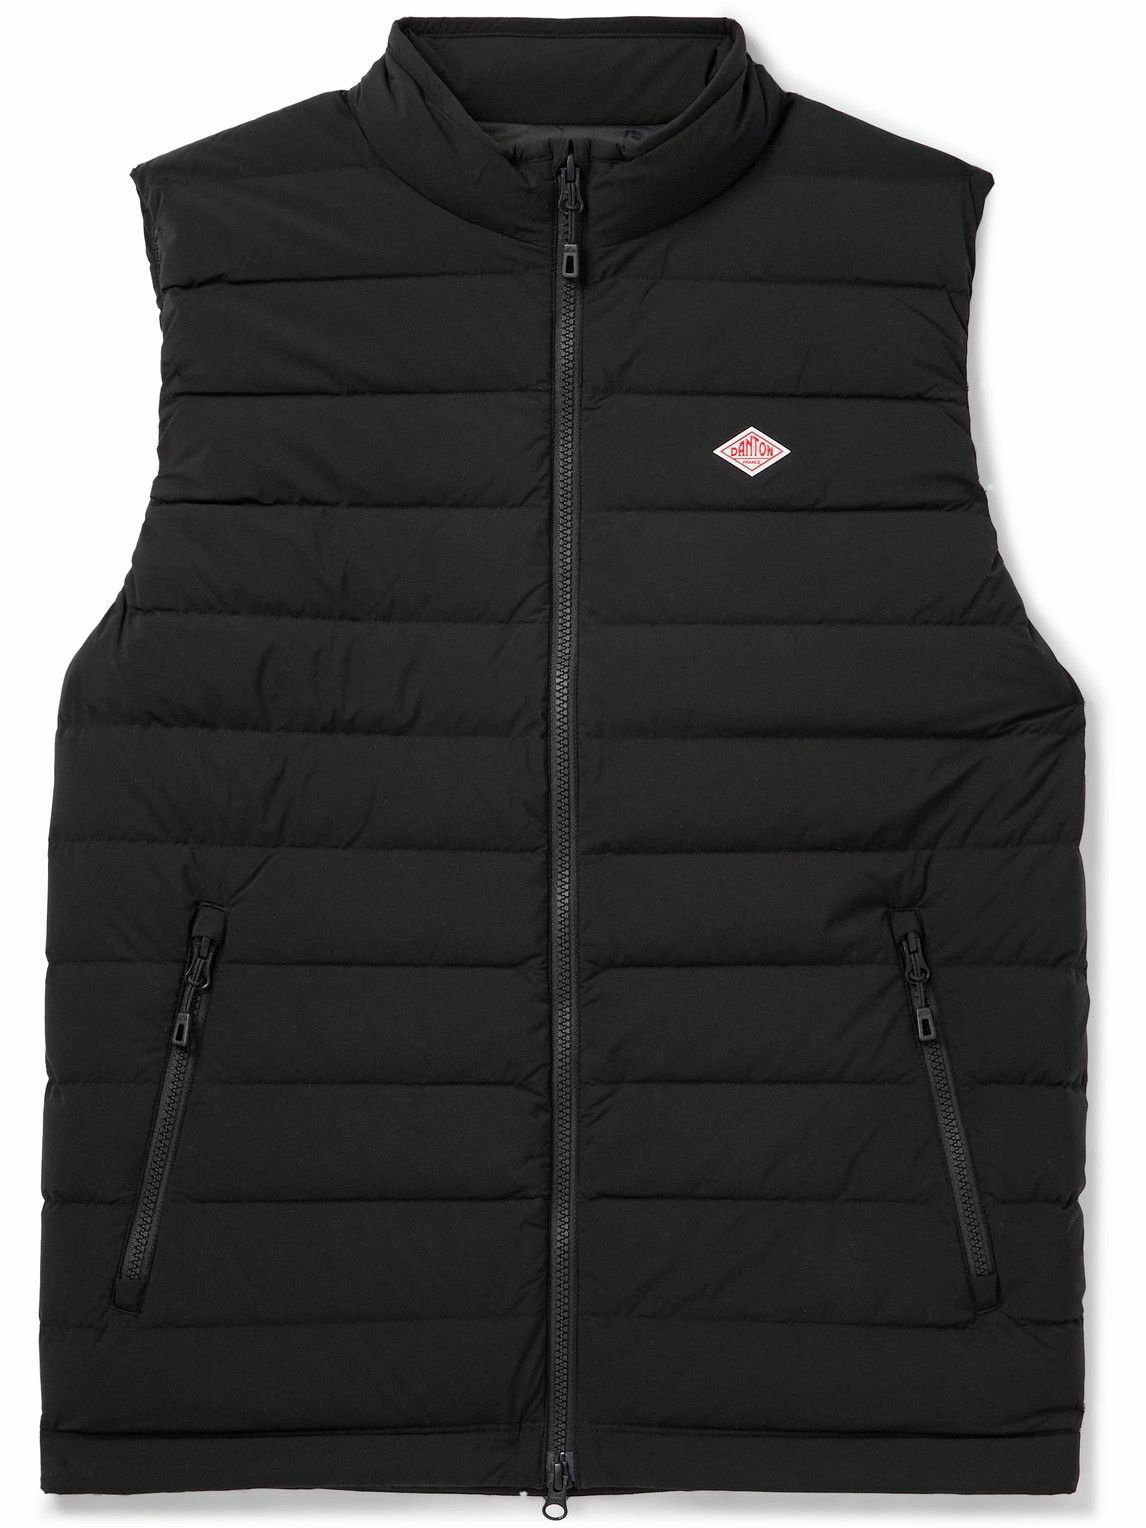 Danton - Polartec Fleece Stand Zip Jacket in Brown – gravitypope